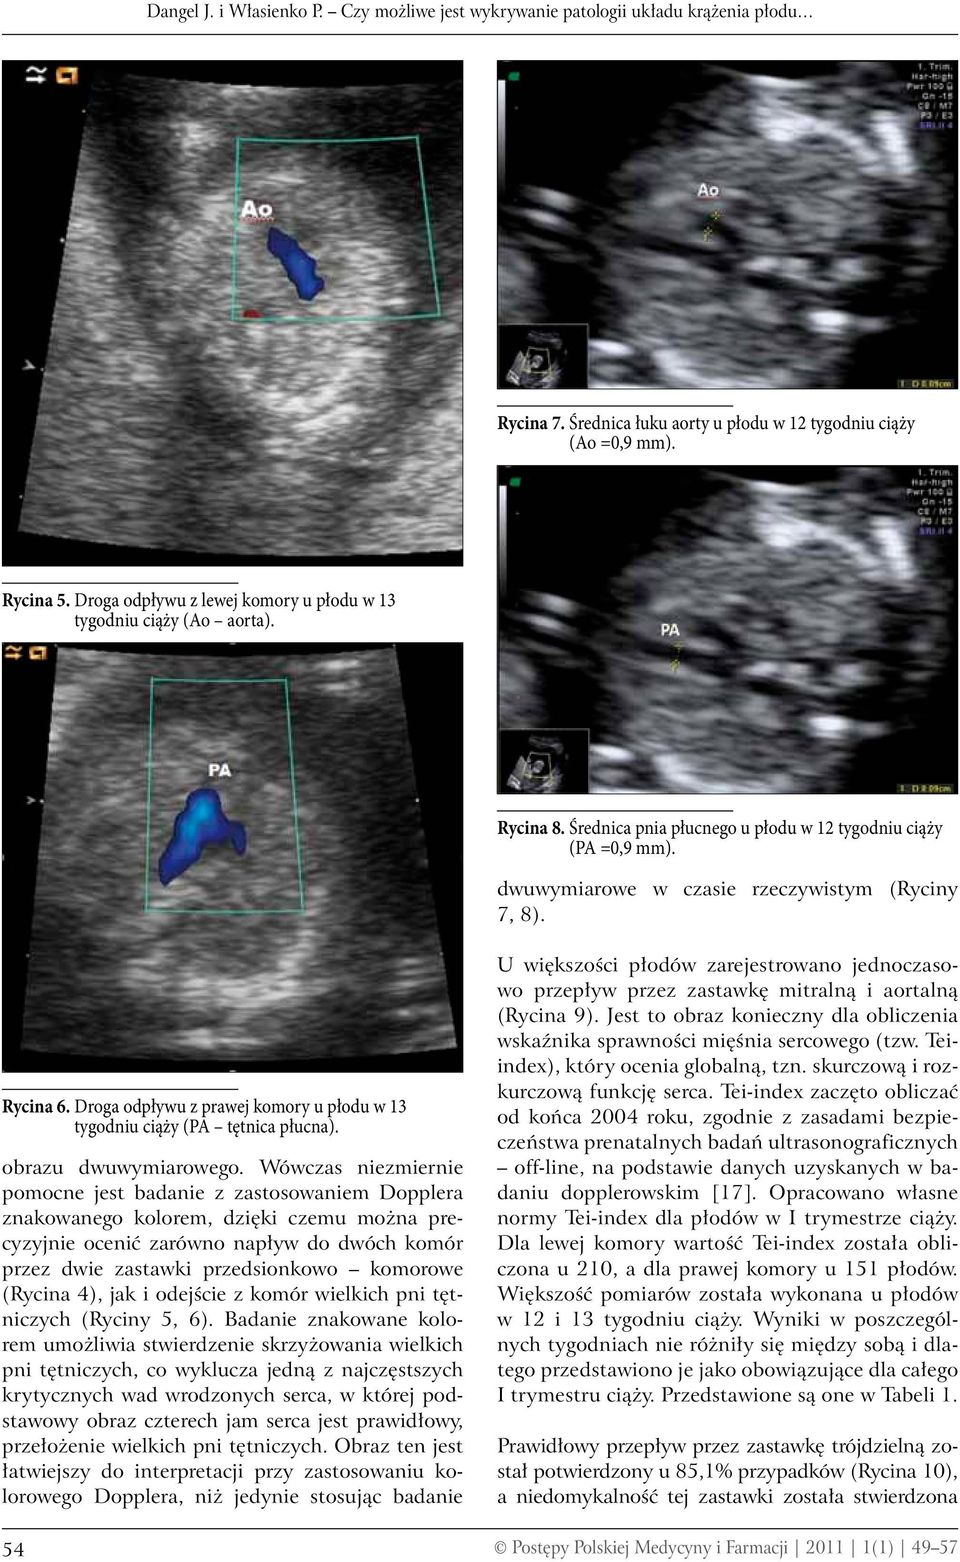 Rycina 6. Droga odpływu z prawej komory u płodu w 13 tygodniu ciąży (PA tętnica płucna). obrazu dwuwymiarowego.